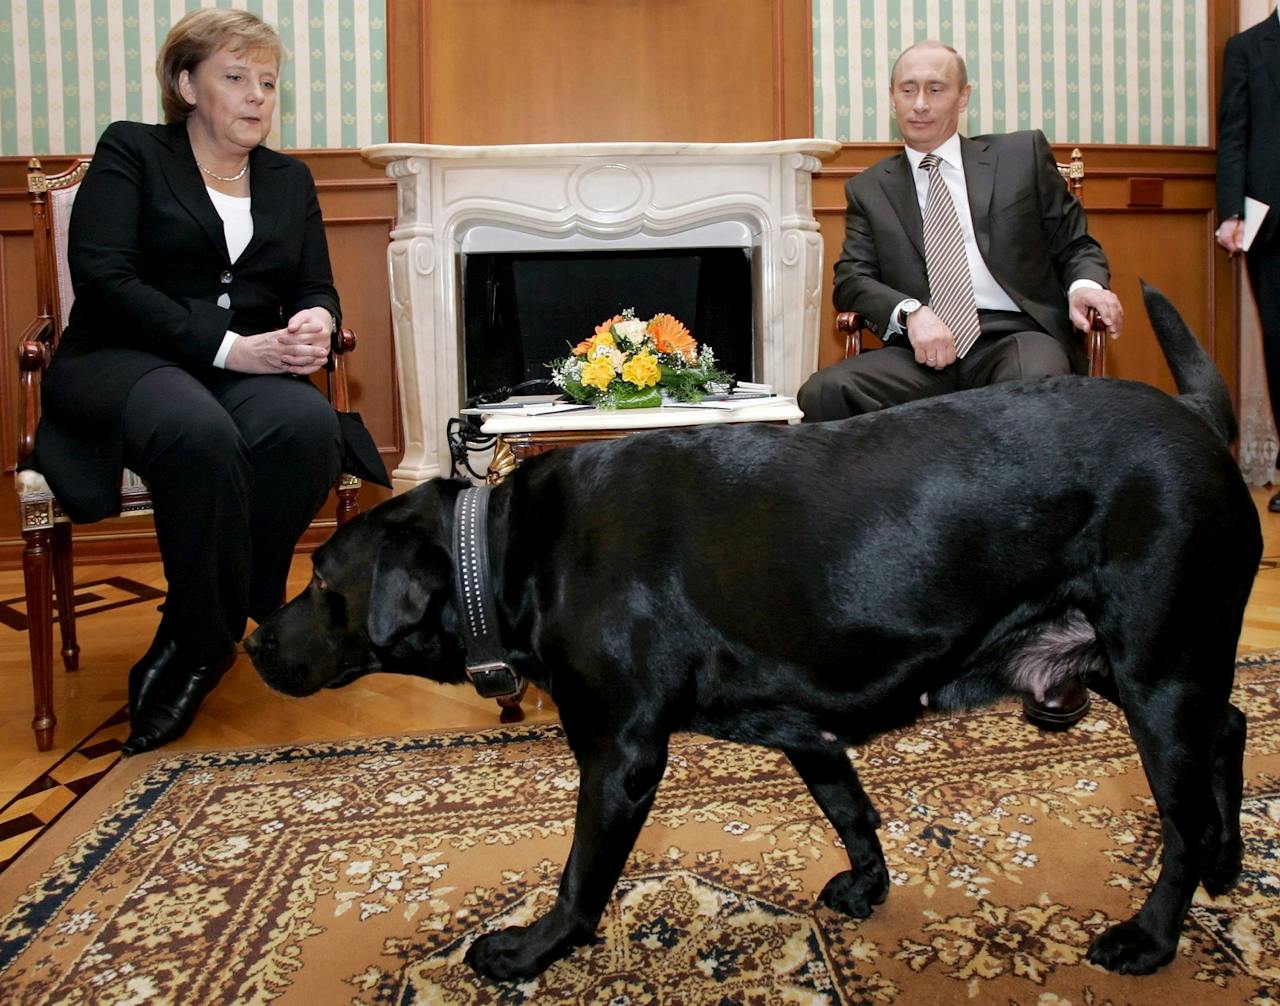 Intimideerde Poetin Merkel? ‘Ik hoop dat u niet bang bent voor mijn hond,’ zei de Russische president bij een treffen in in 2007. Poetin beweerde later dat hij niet wist dat Merkel bang is voor honden.